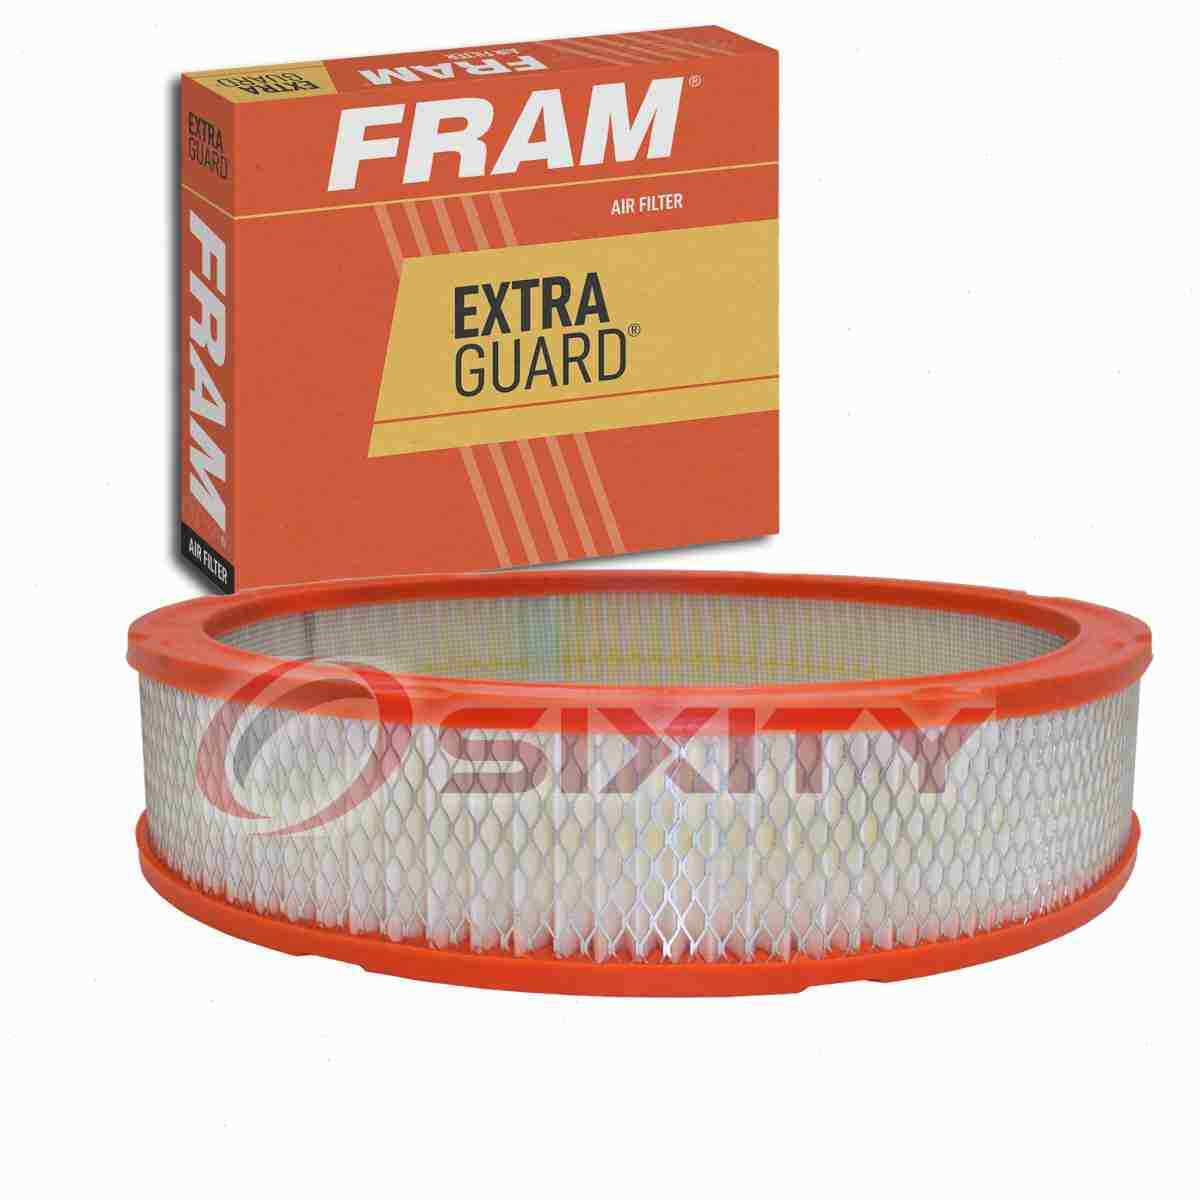 FRAM Extra Guard Air Filter for 1975-1982 Chrysler Cordoba Intake Inlet ur